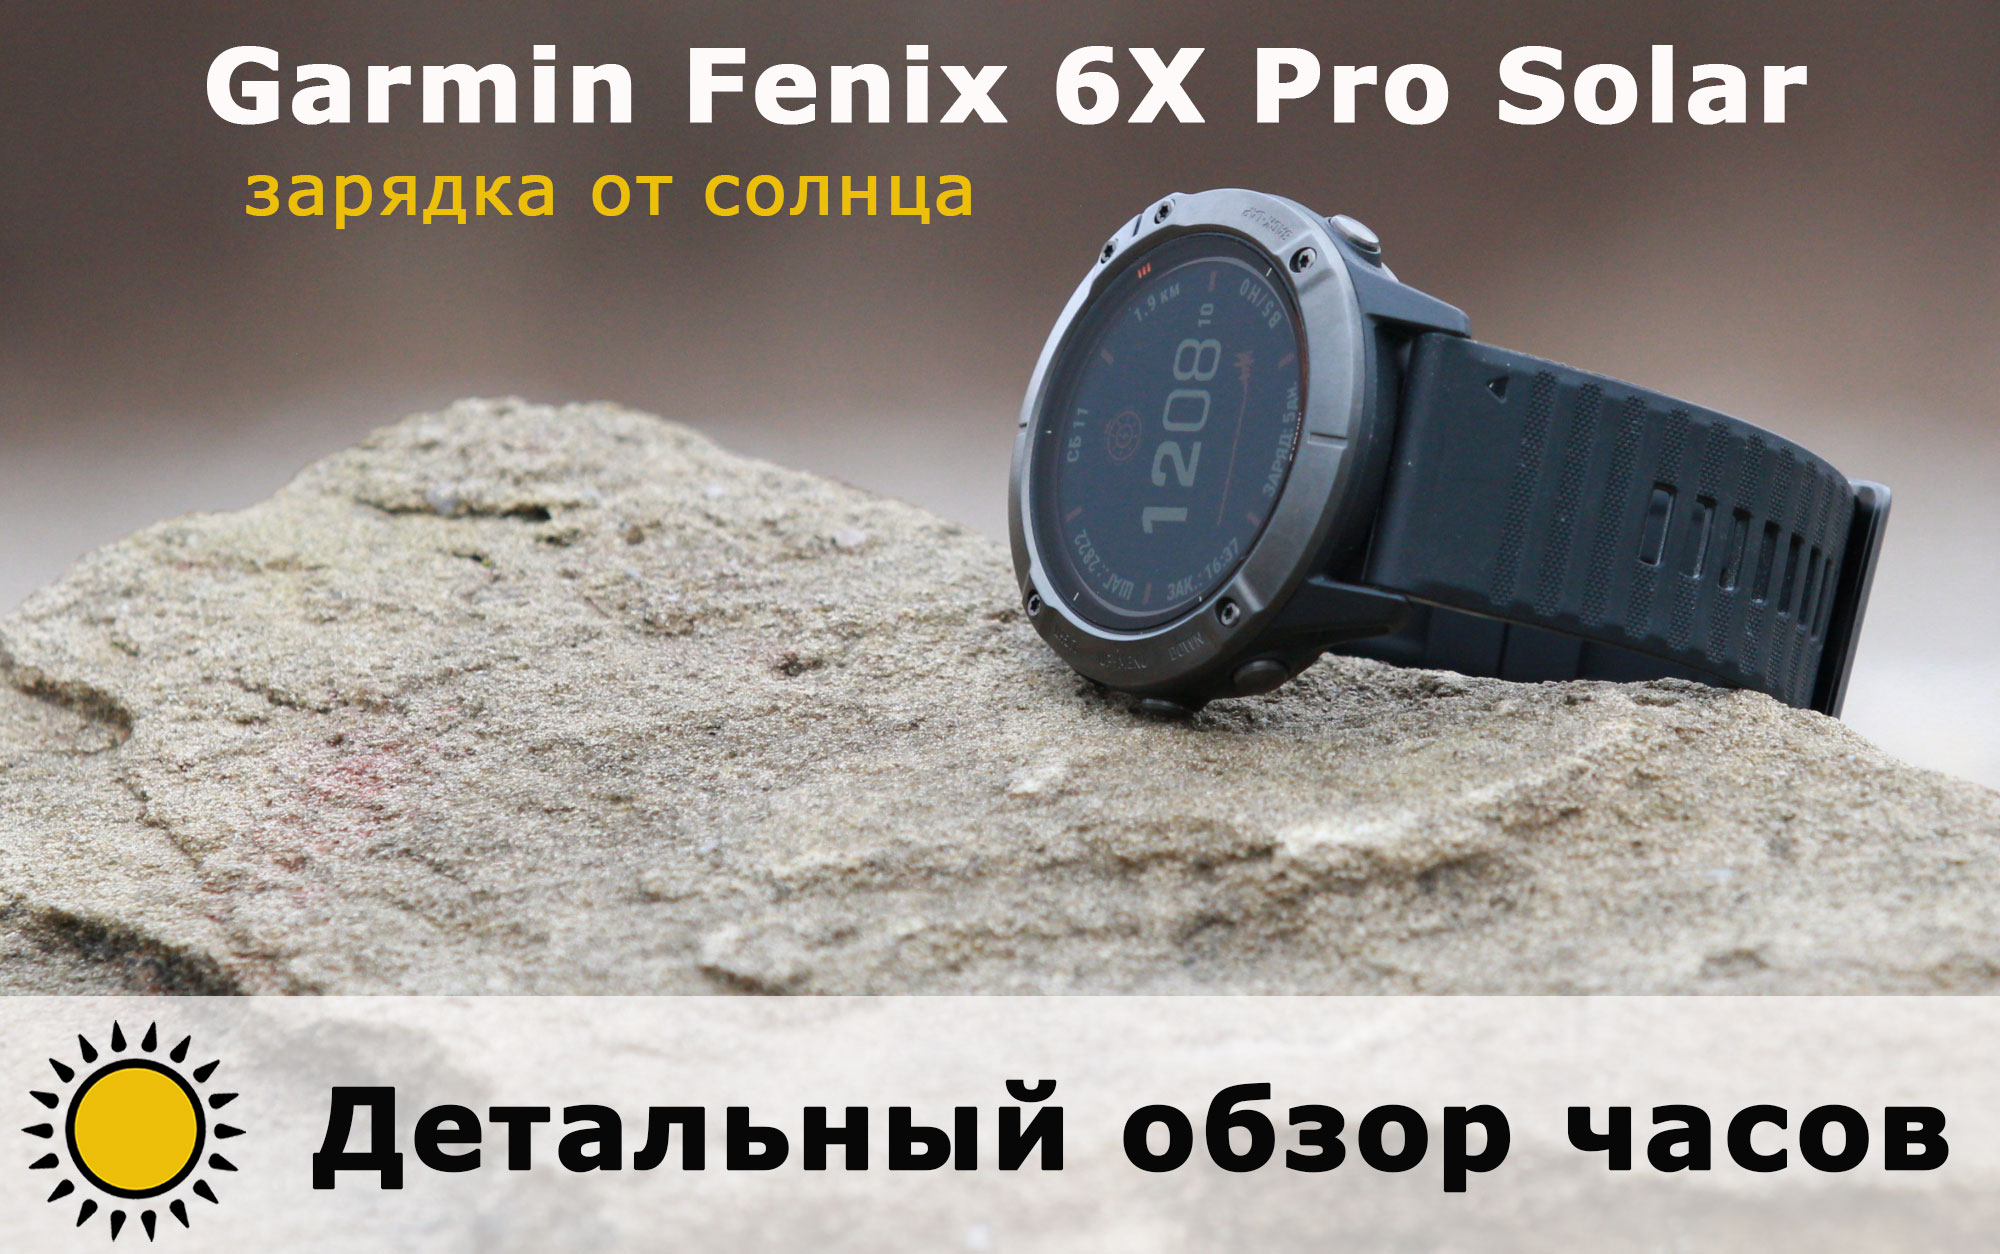 Детальный обзор часов Garmin Fenix 6X Pro Solar - зарядка от солнца